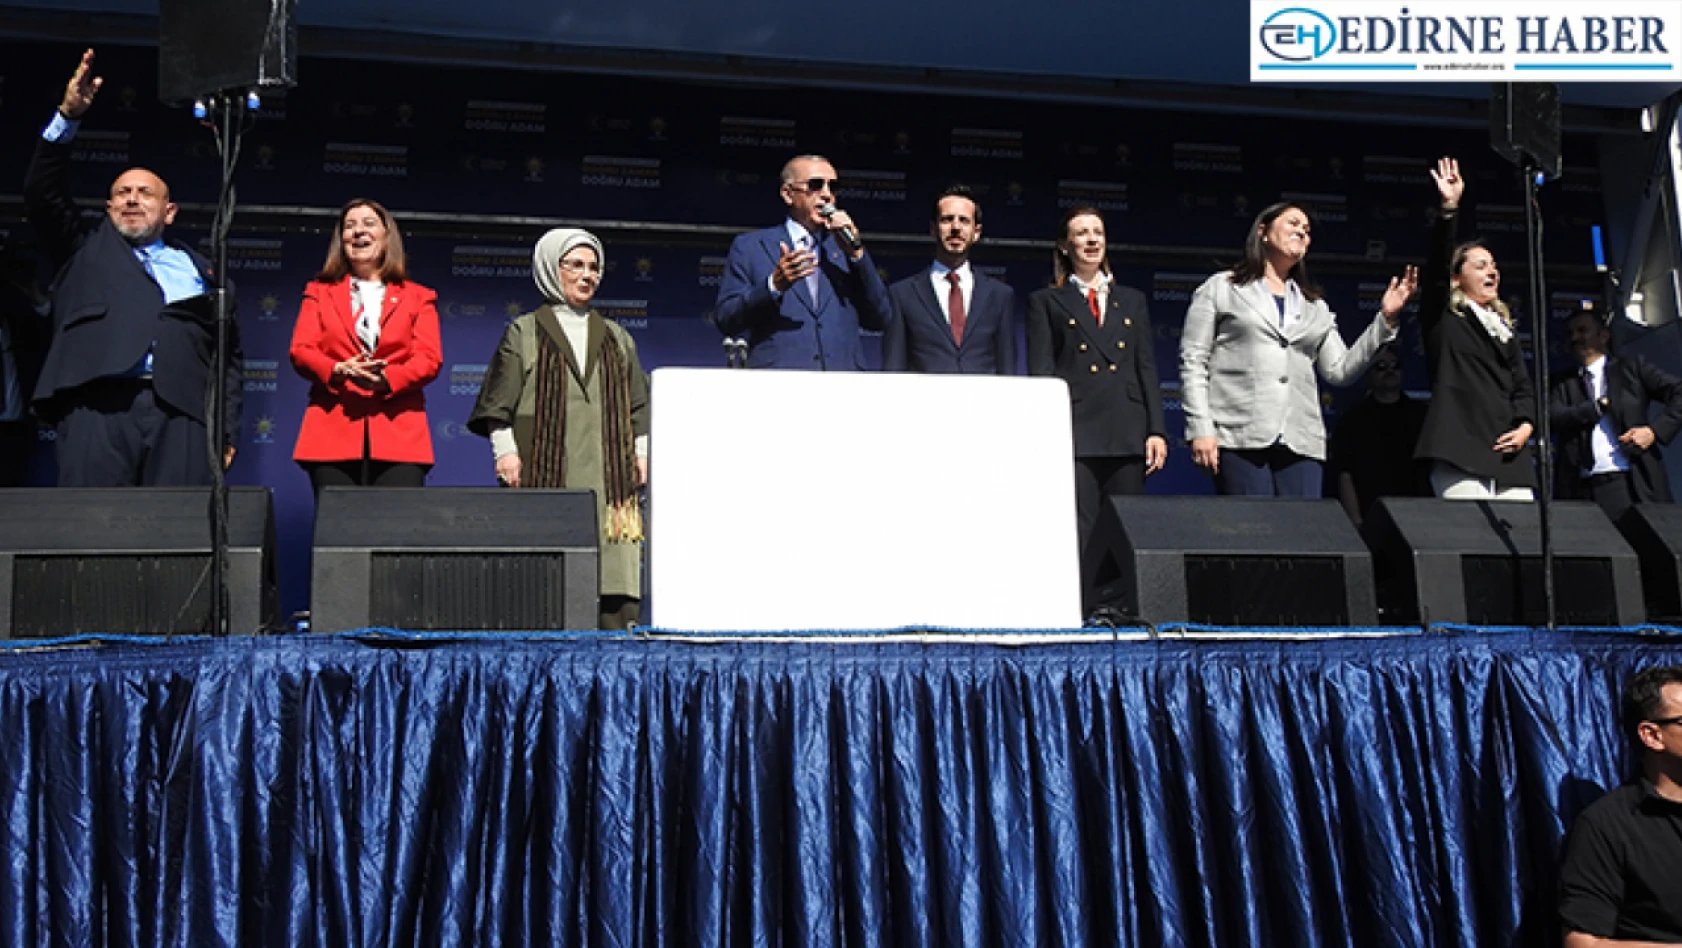 İba, 'Edirne'den 4 milletvekili adayımızla birlikte güçlü bir temsiliyet ile yola çıktık'